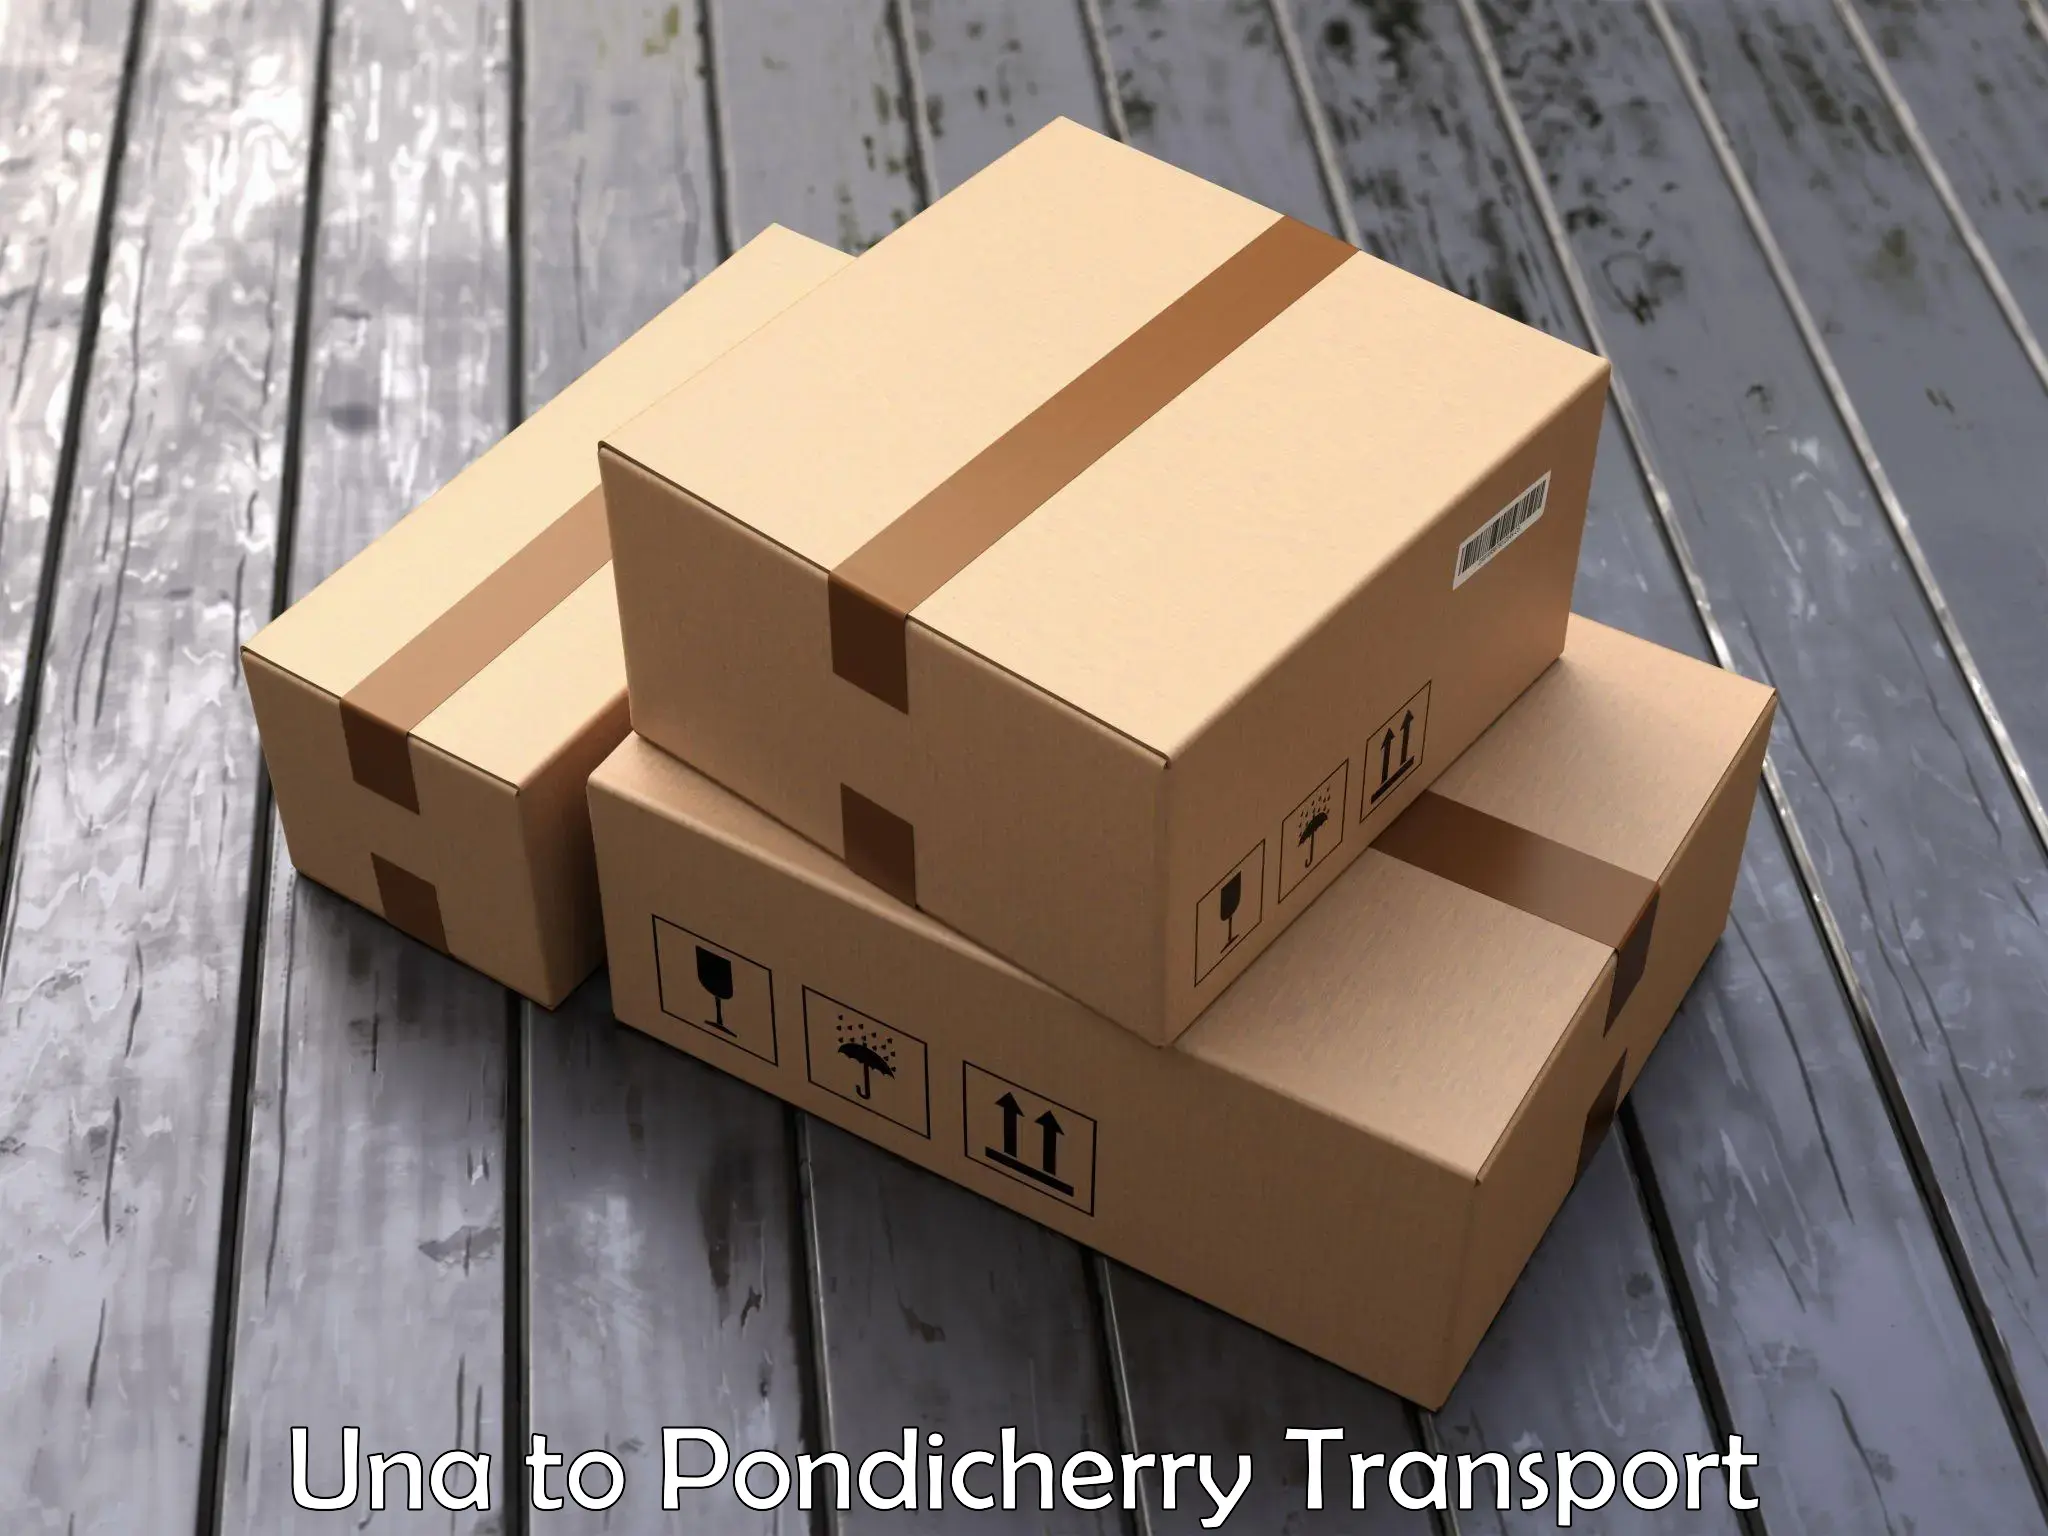 Express transport services Una to Pondicherry